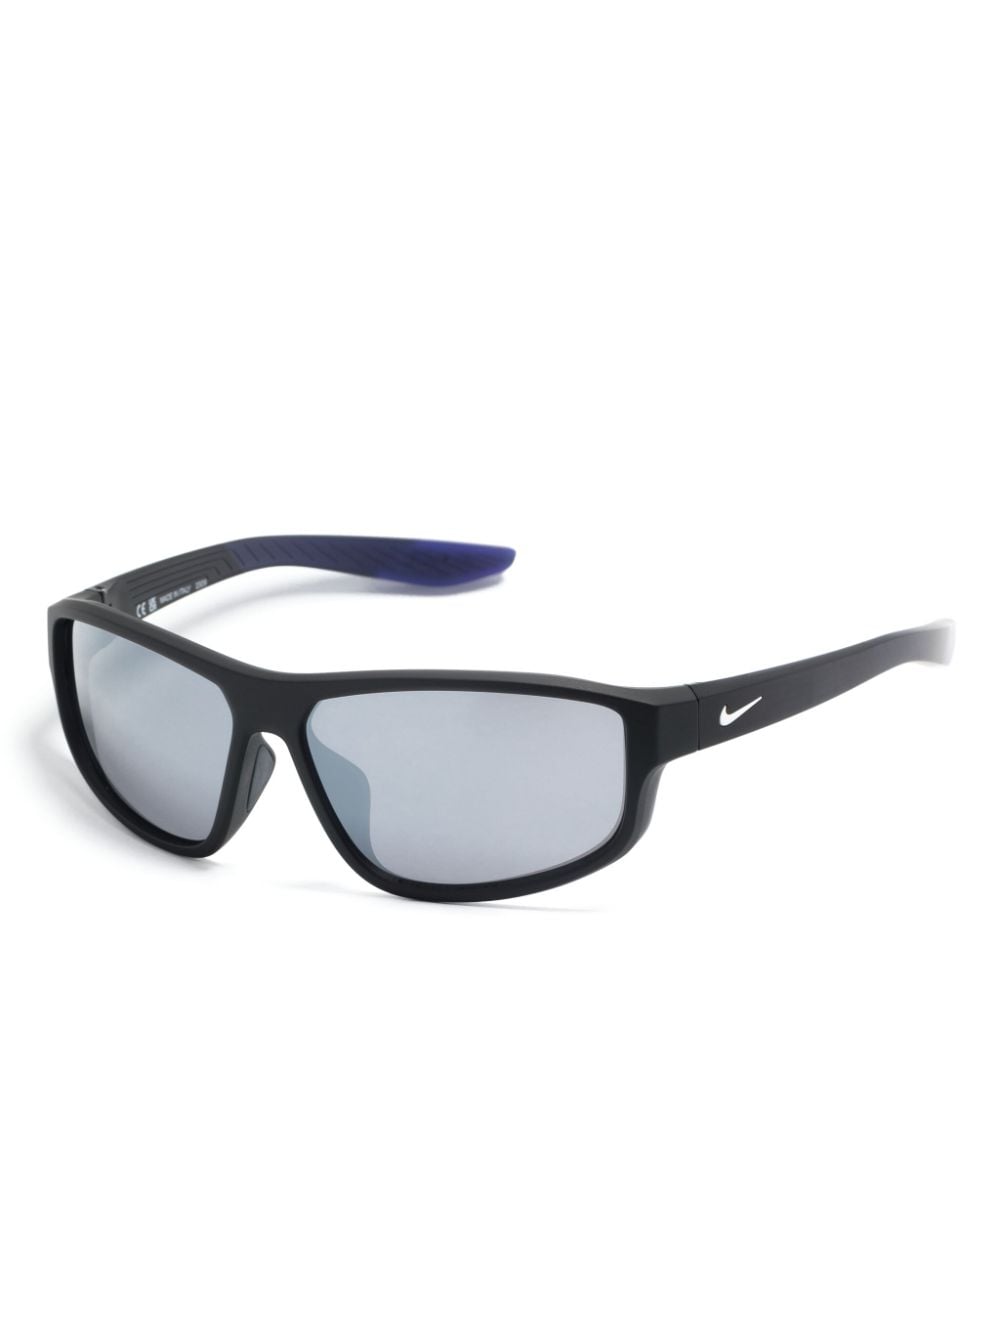 Nike Brazel Fuel zonnebril met rechthoekig montuur Zwart